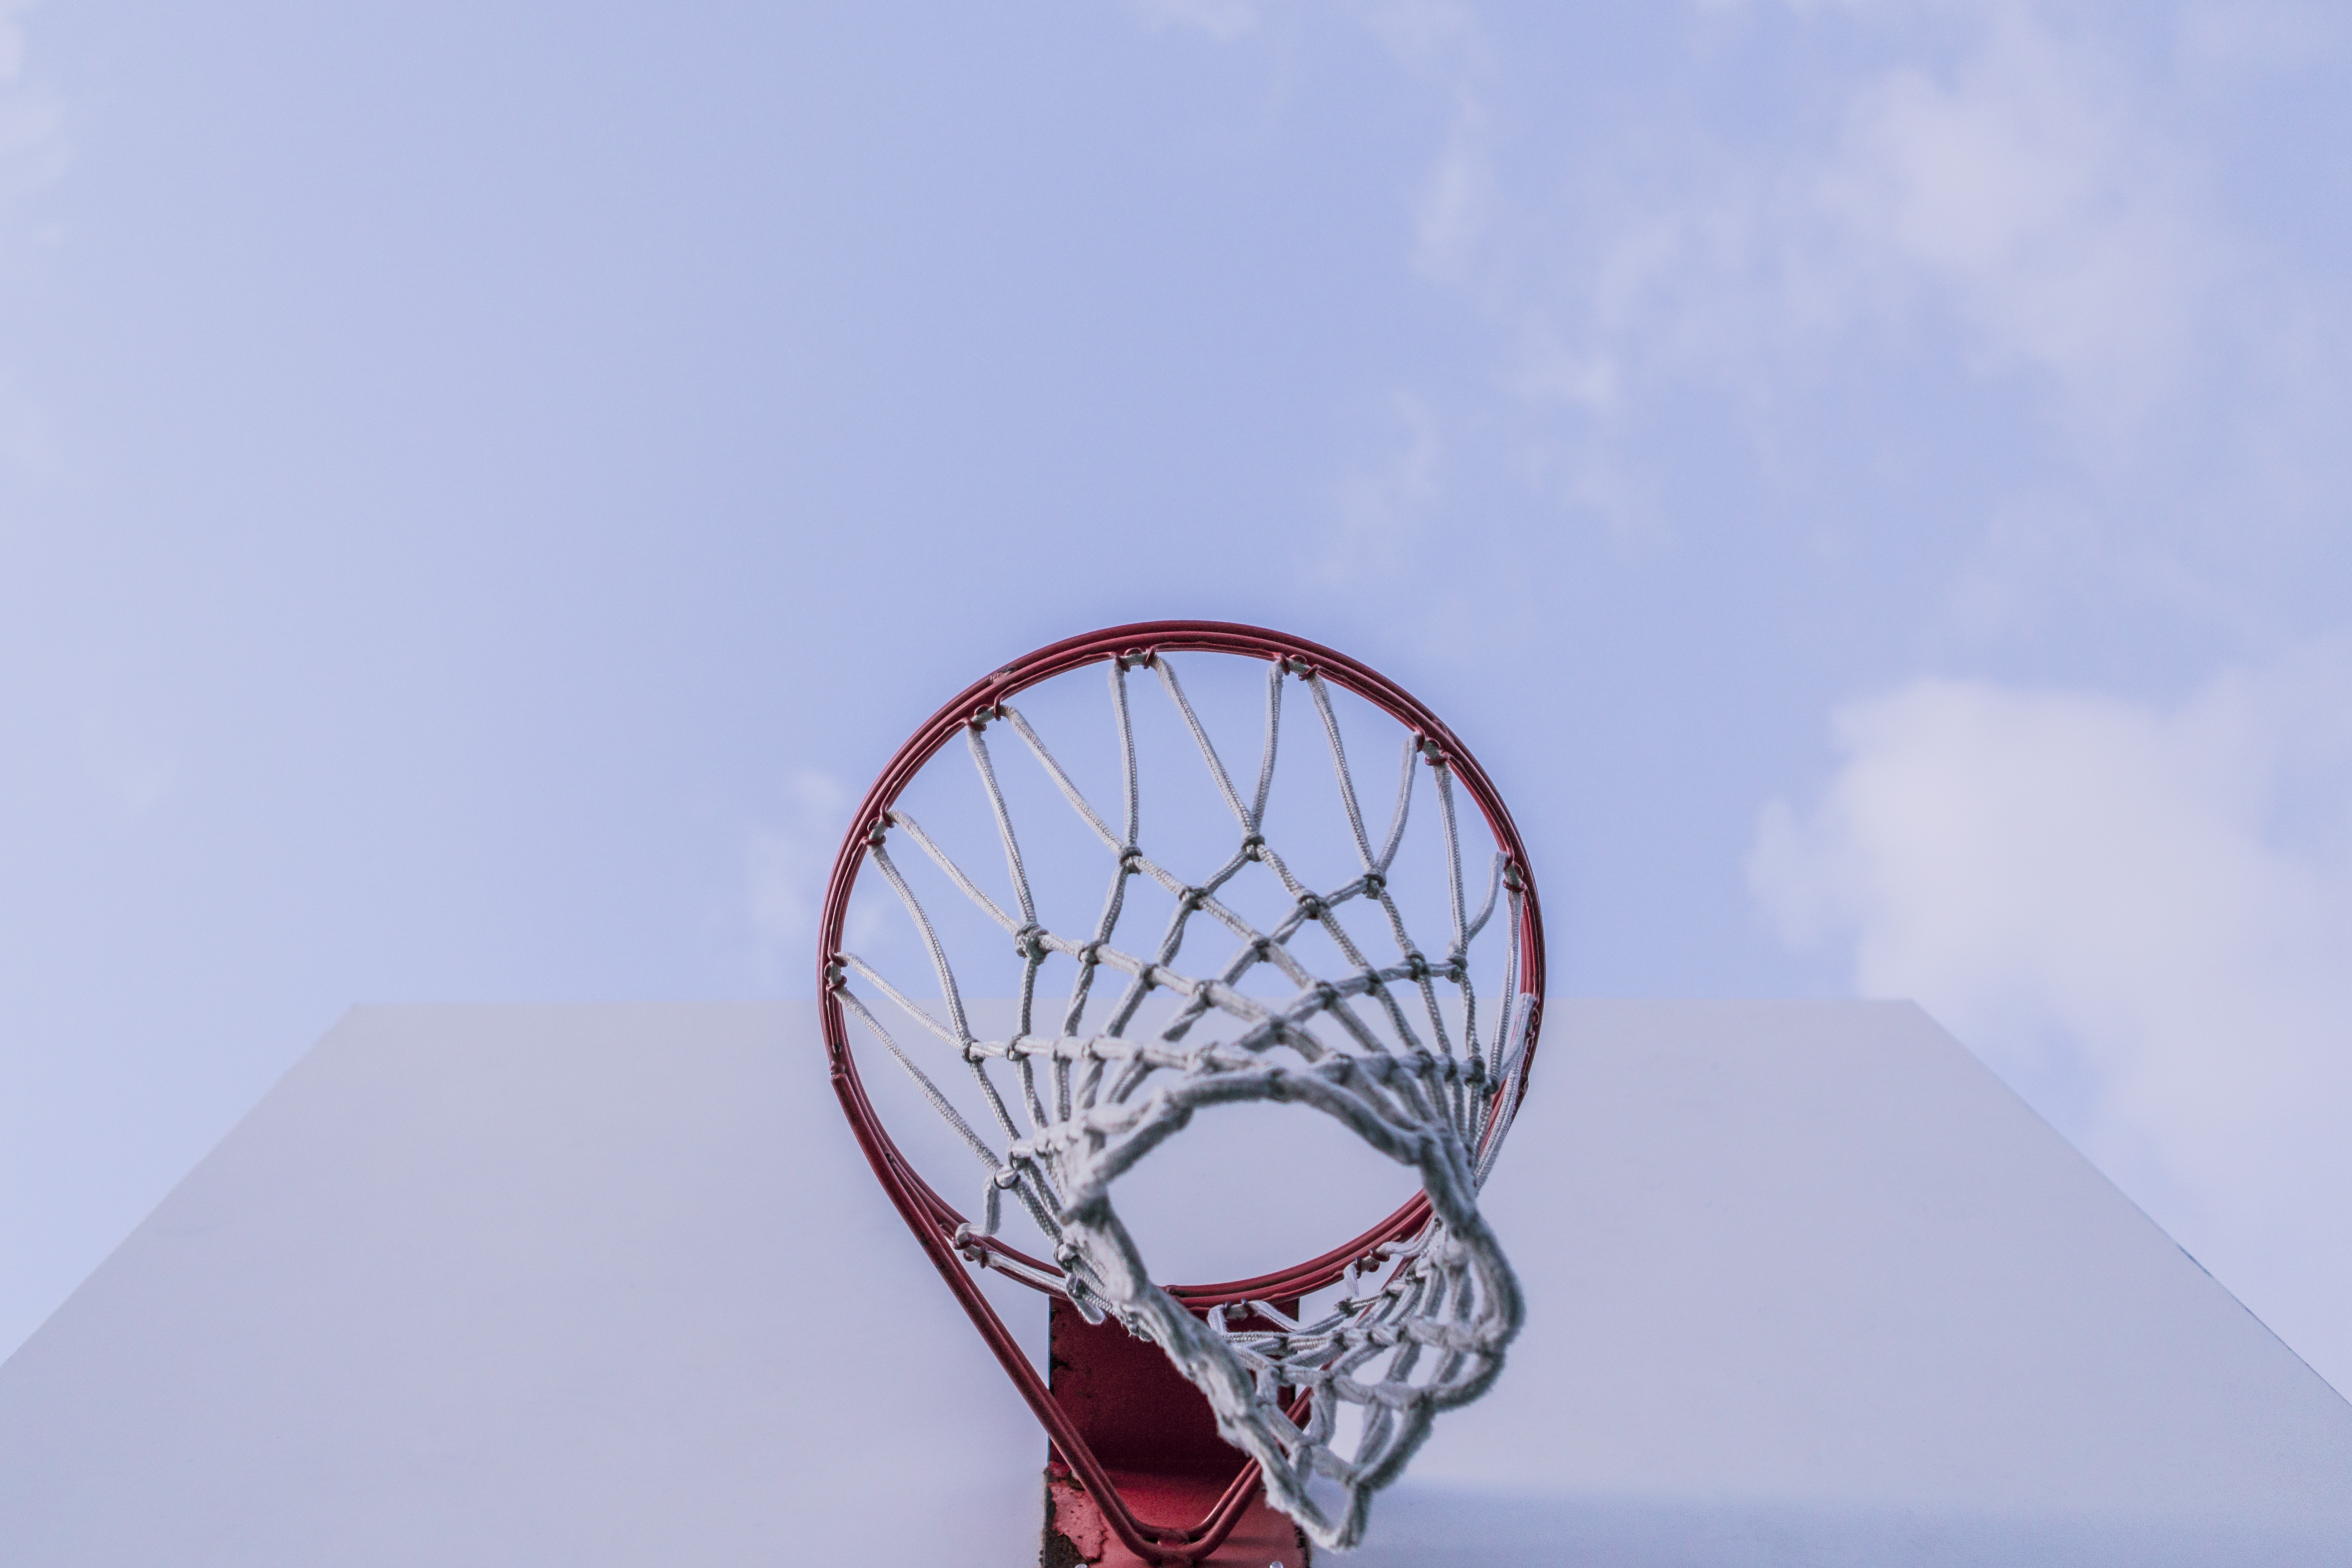 Aim High, basket ball net